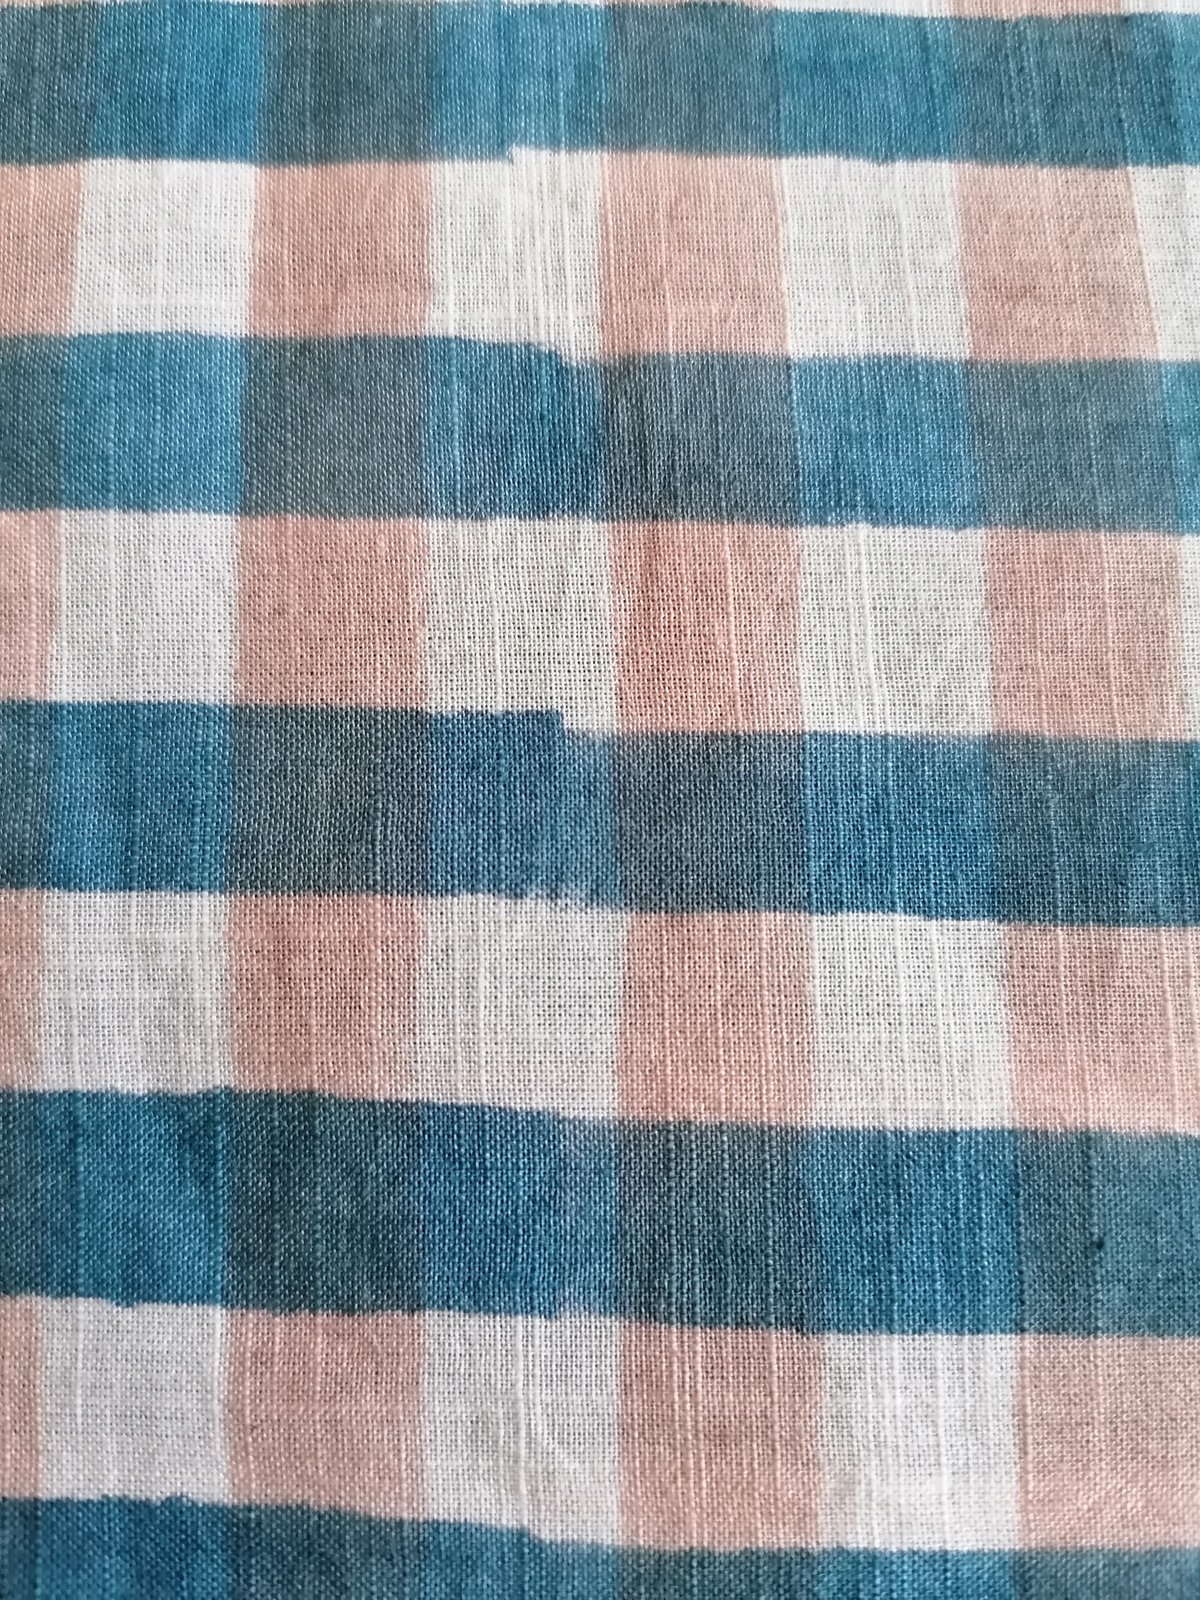 Image of Namasté fabric carreaux bleus